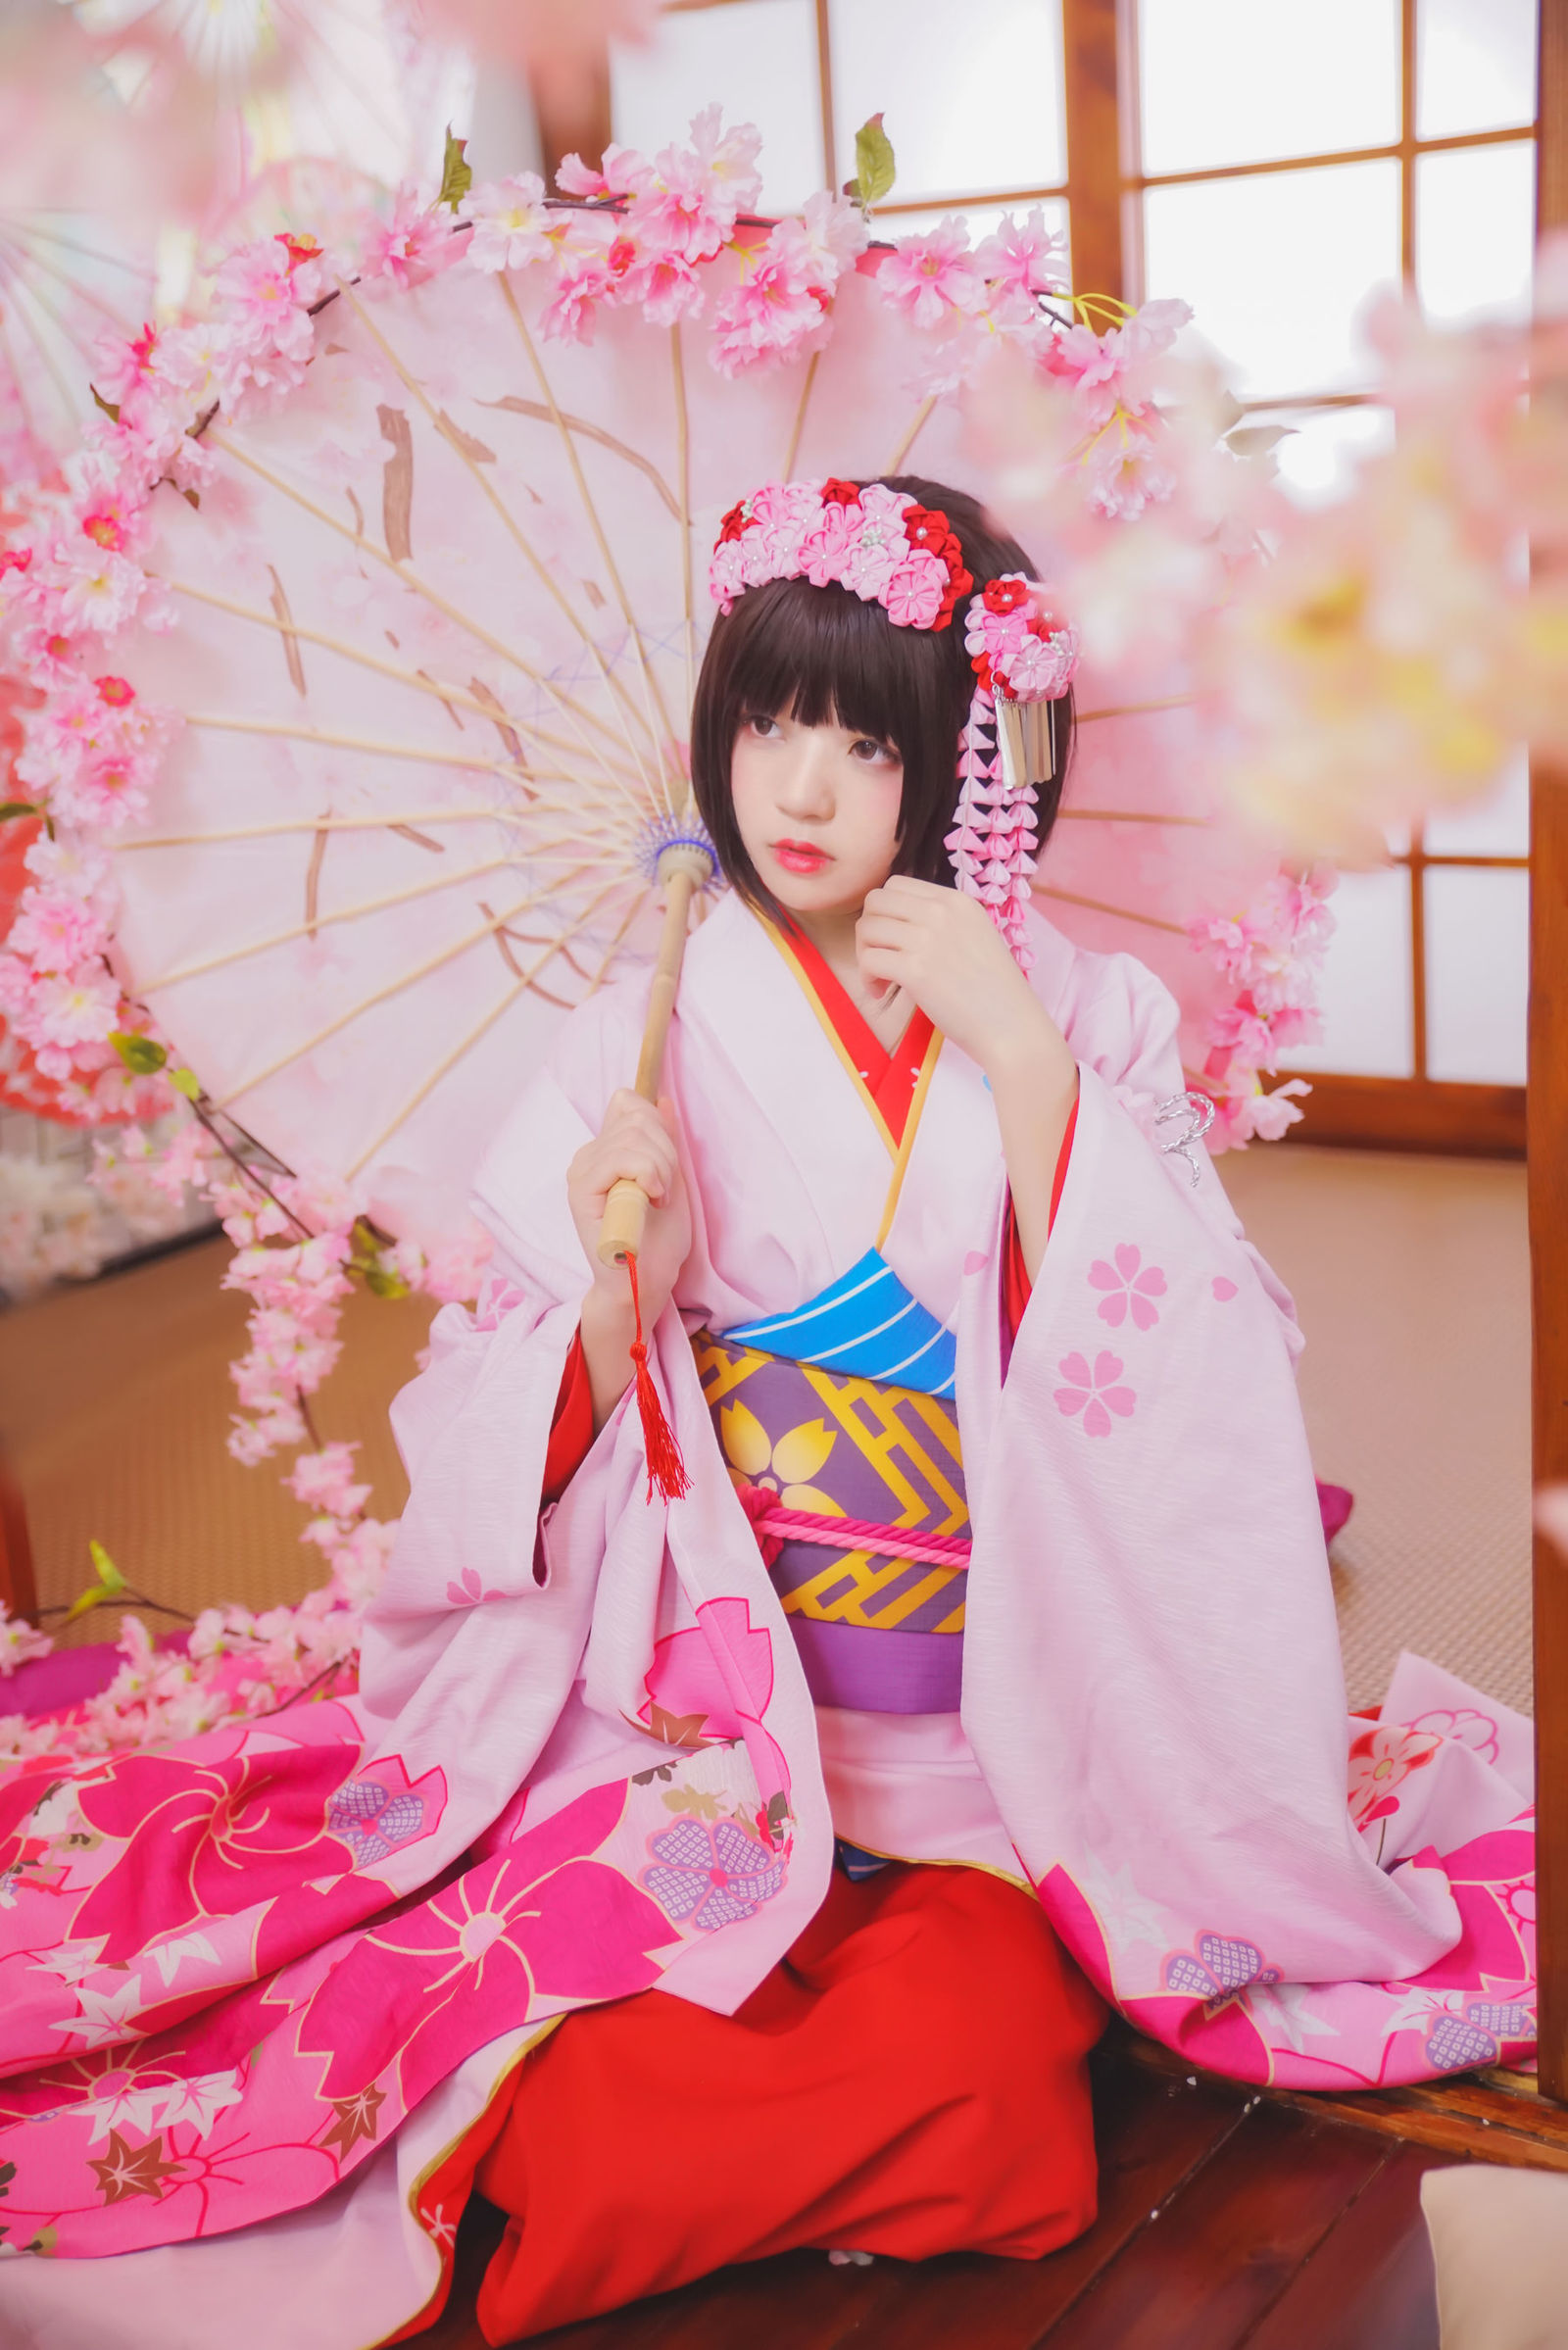 日本少女经典和服唯美西西444WWf高清大但图片